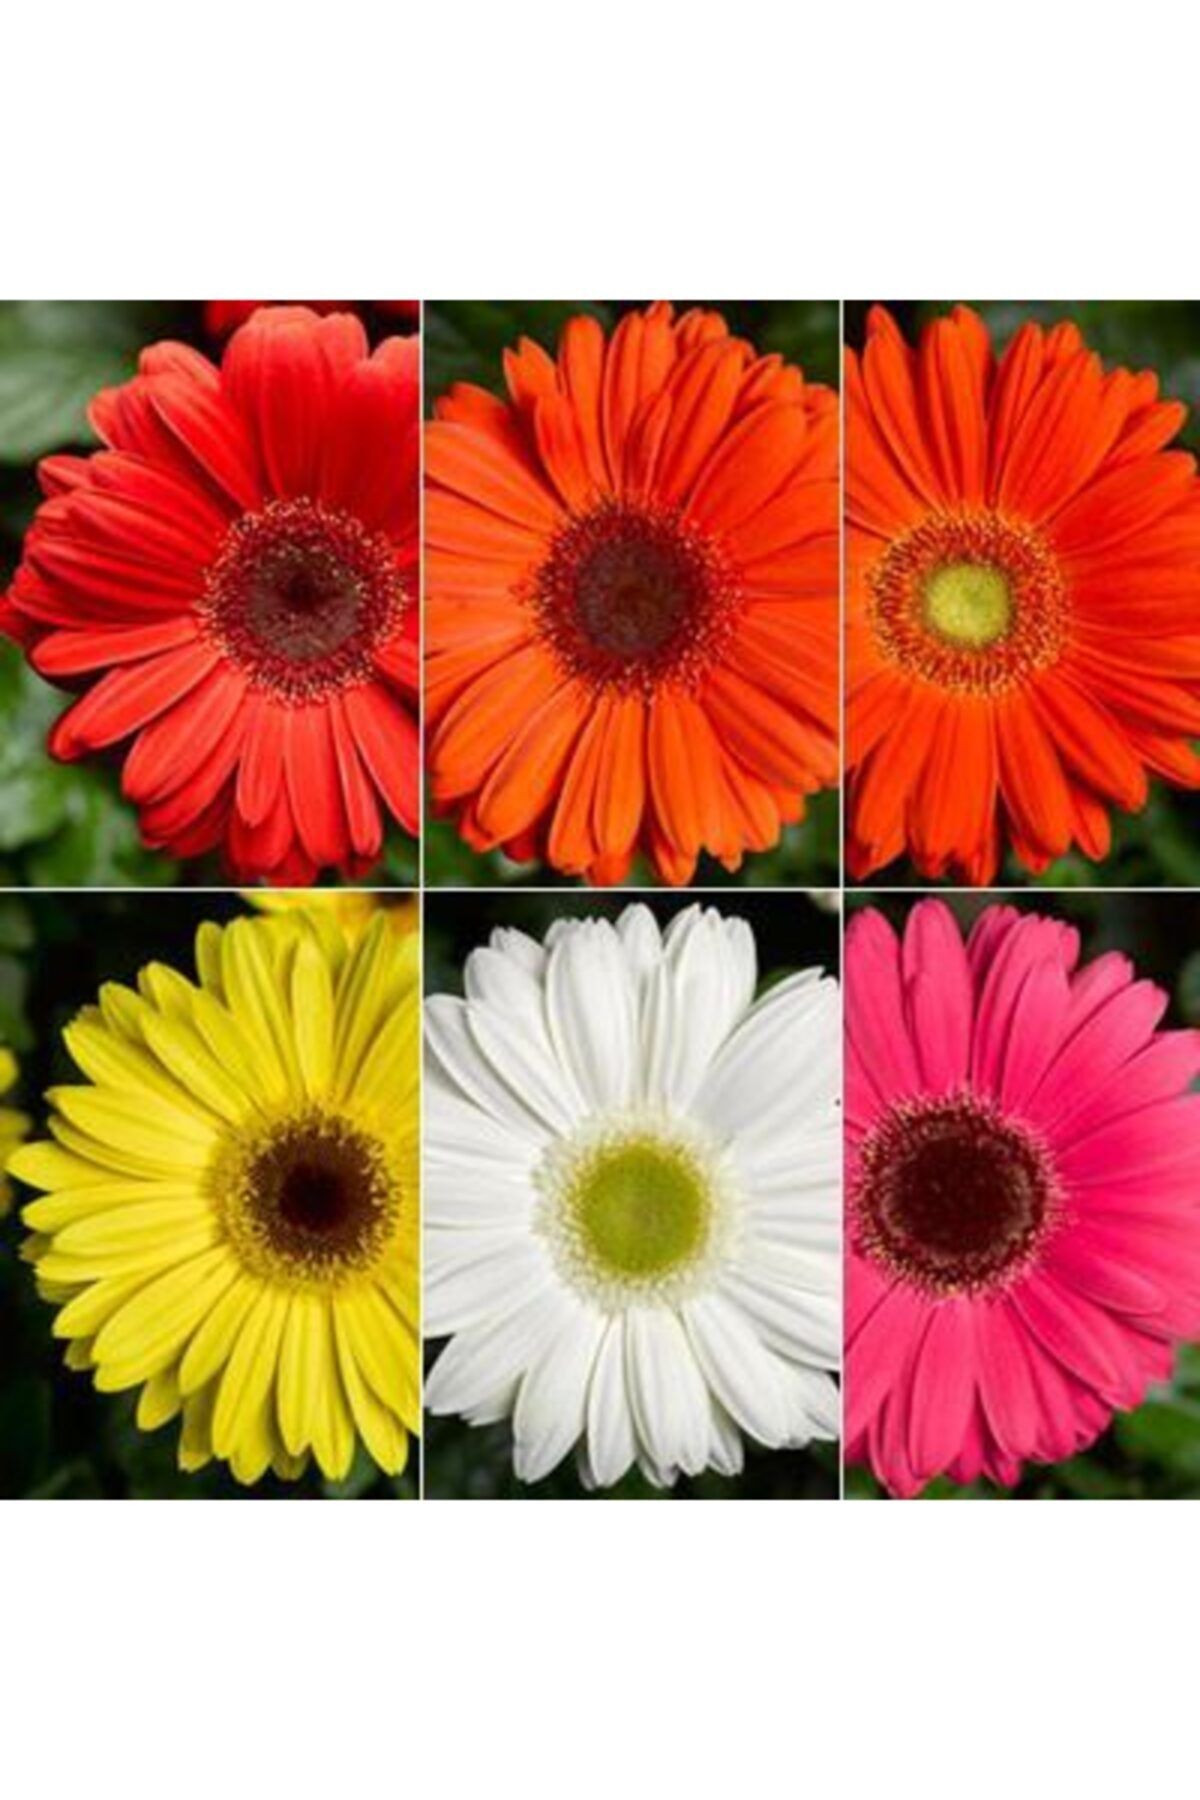 CAYKA 50 Adet Karışık Renk Gerbera Çiçeği Tohum+10 Adet Hediye Karışık Renk Lale Çiçek Tohumu argo Bedava